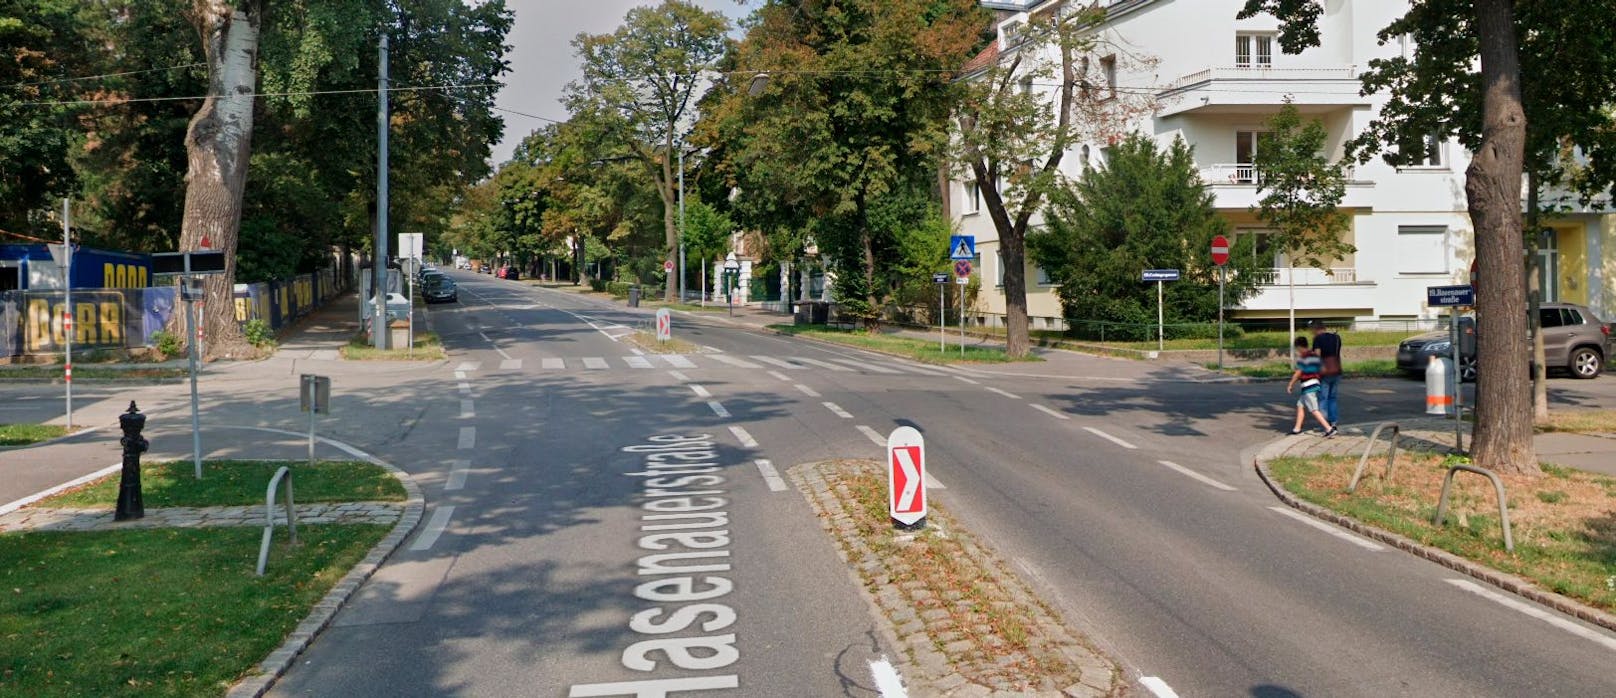 Der Unfallort: die Kreuzung Hasenauerstraße / Cottagegasse in Wien-Döbling